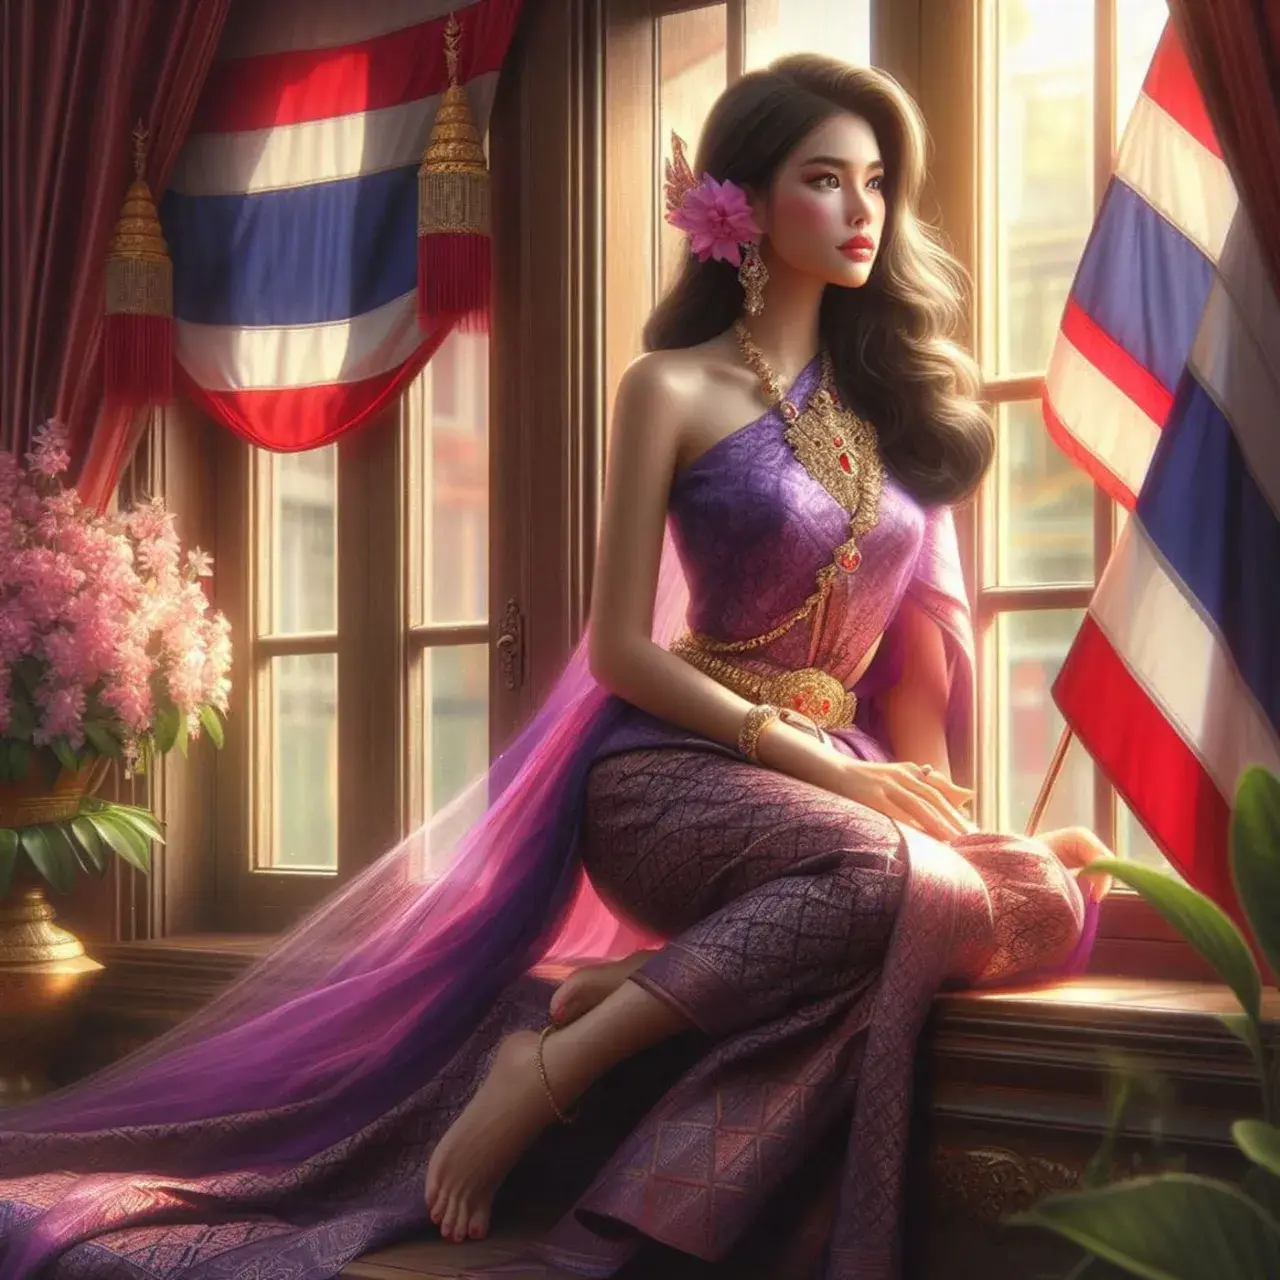 THAILAND 🇹🇭 | AI ART: Thai traditional dress ✦